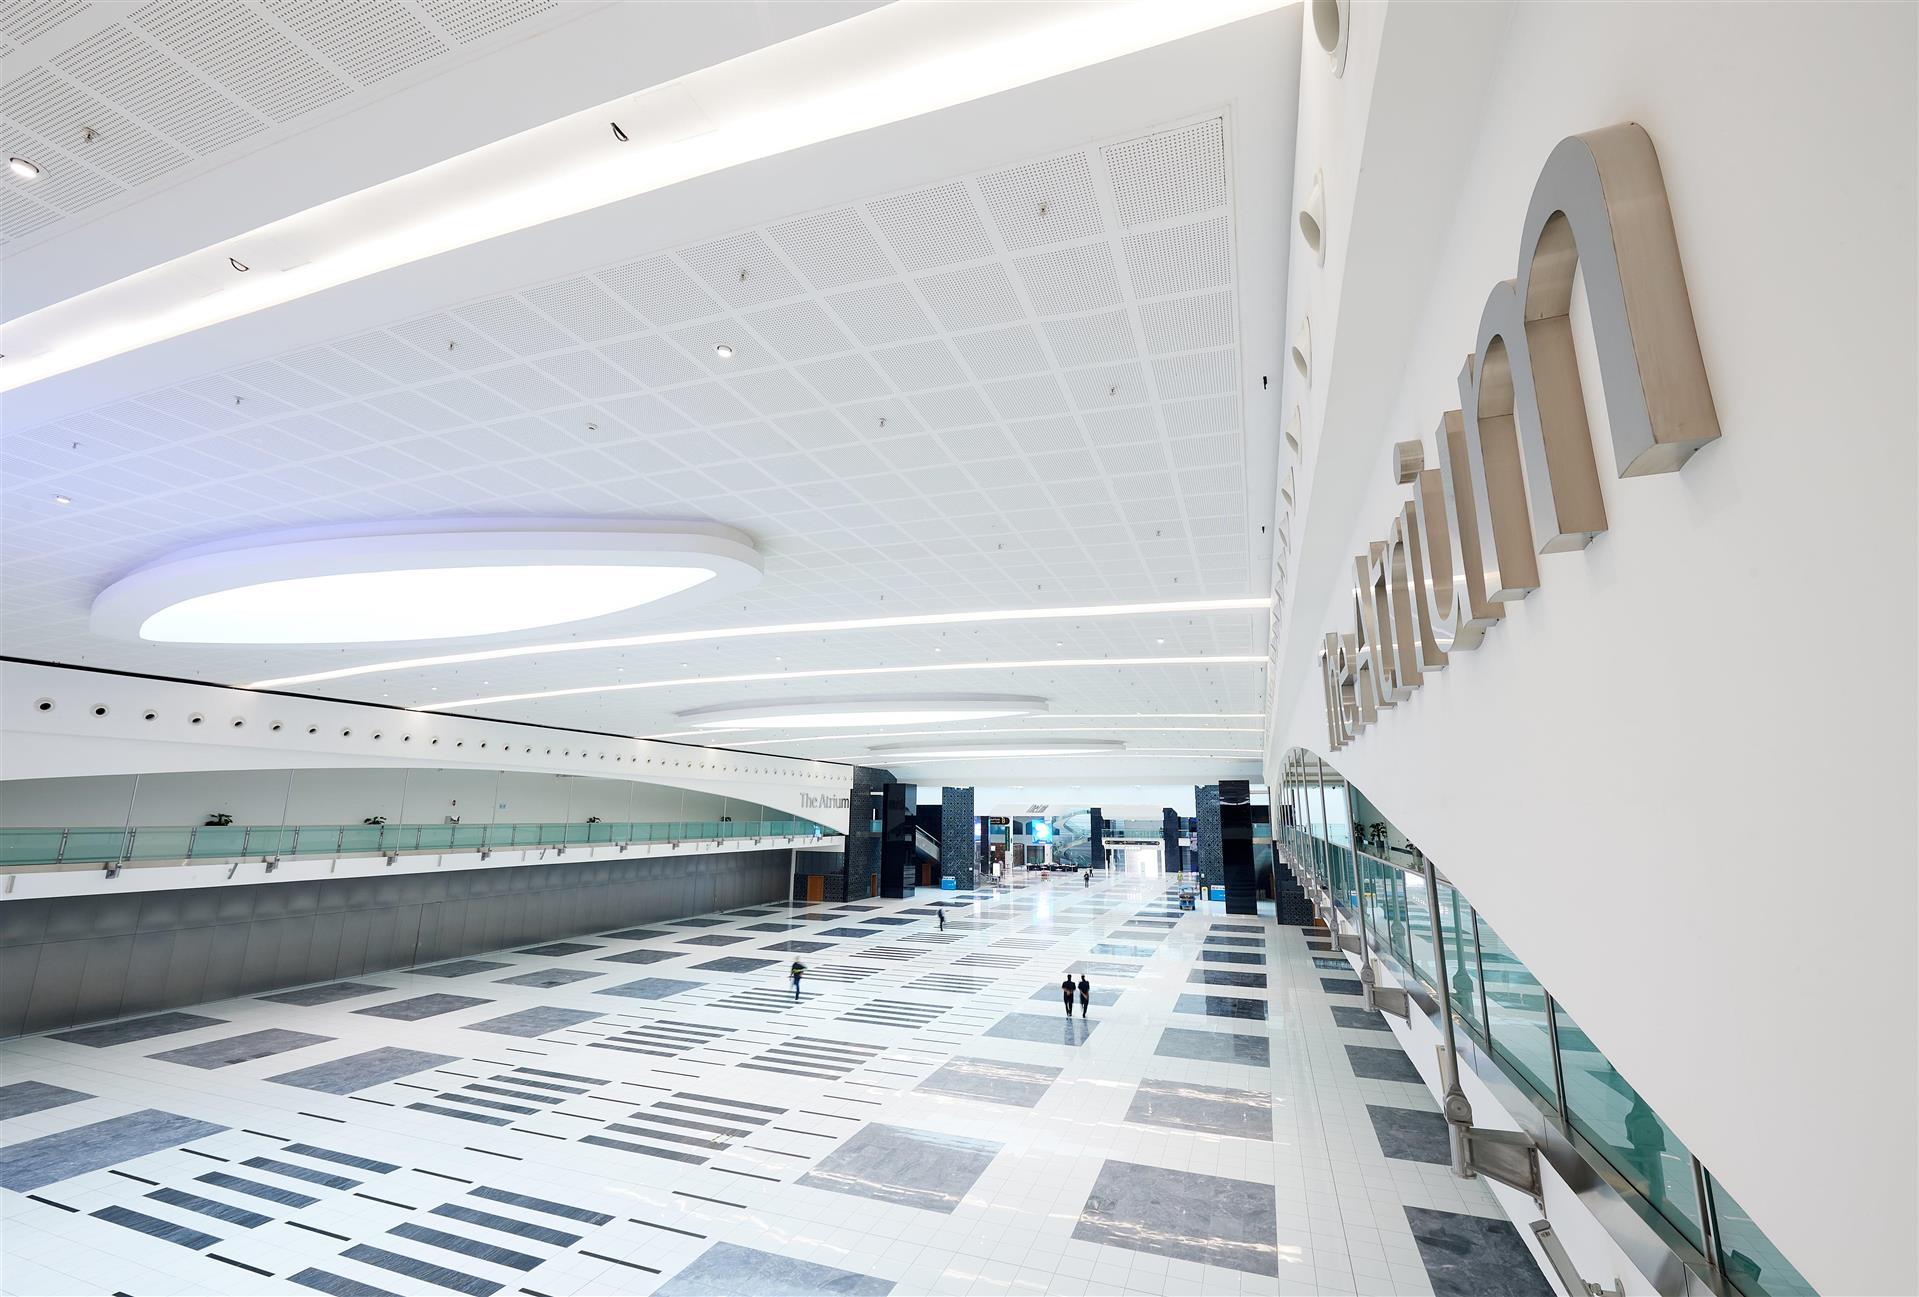 Abu Dhabi National Exhibition Centre (ADNEC) in Abu Dhabi, AE